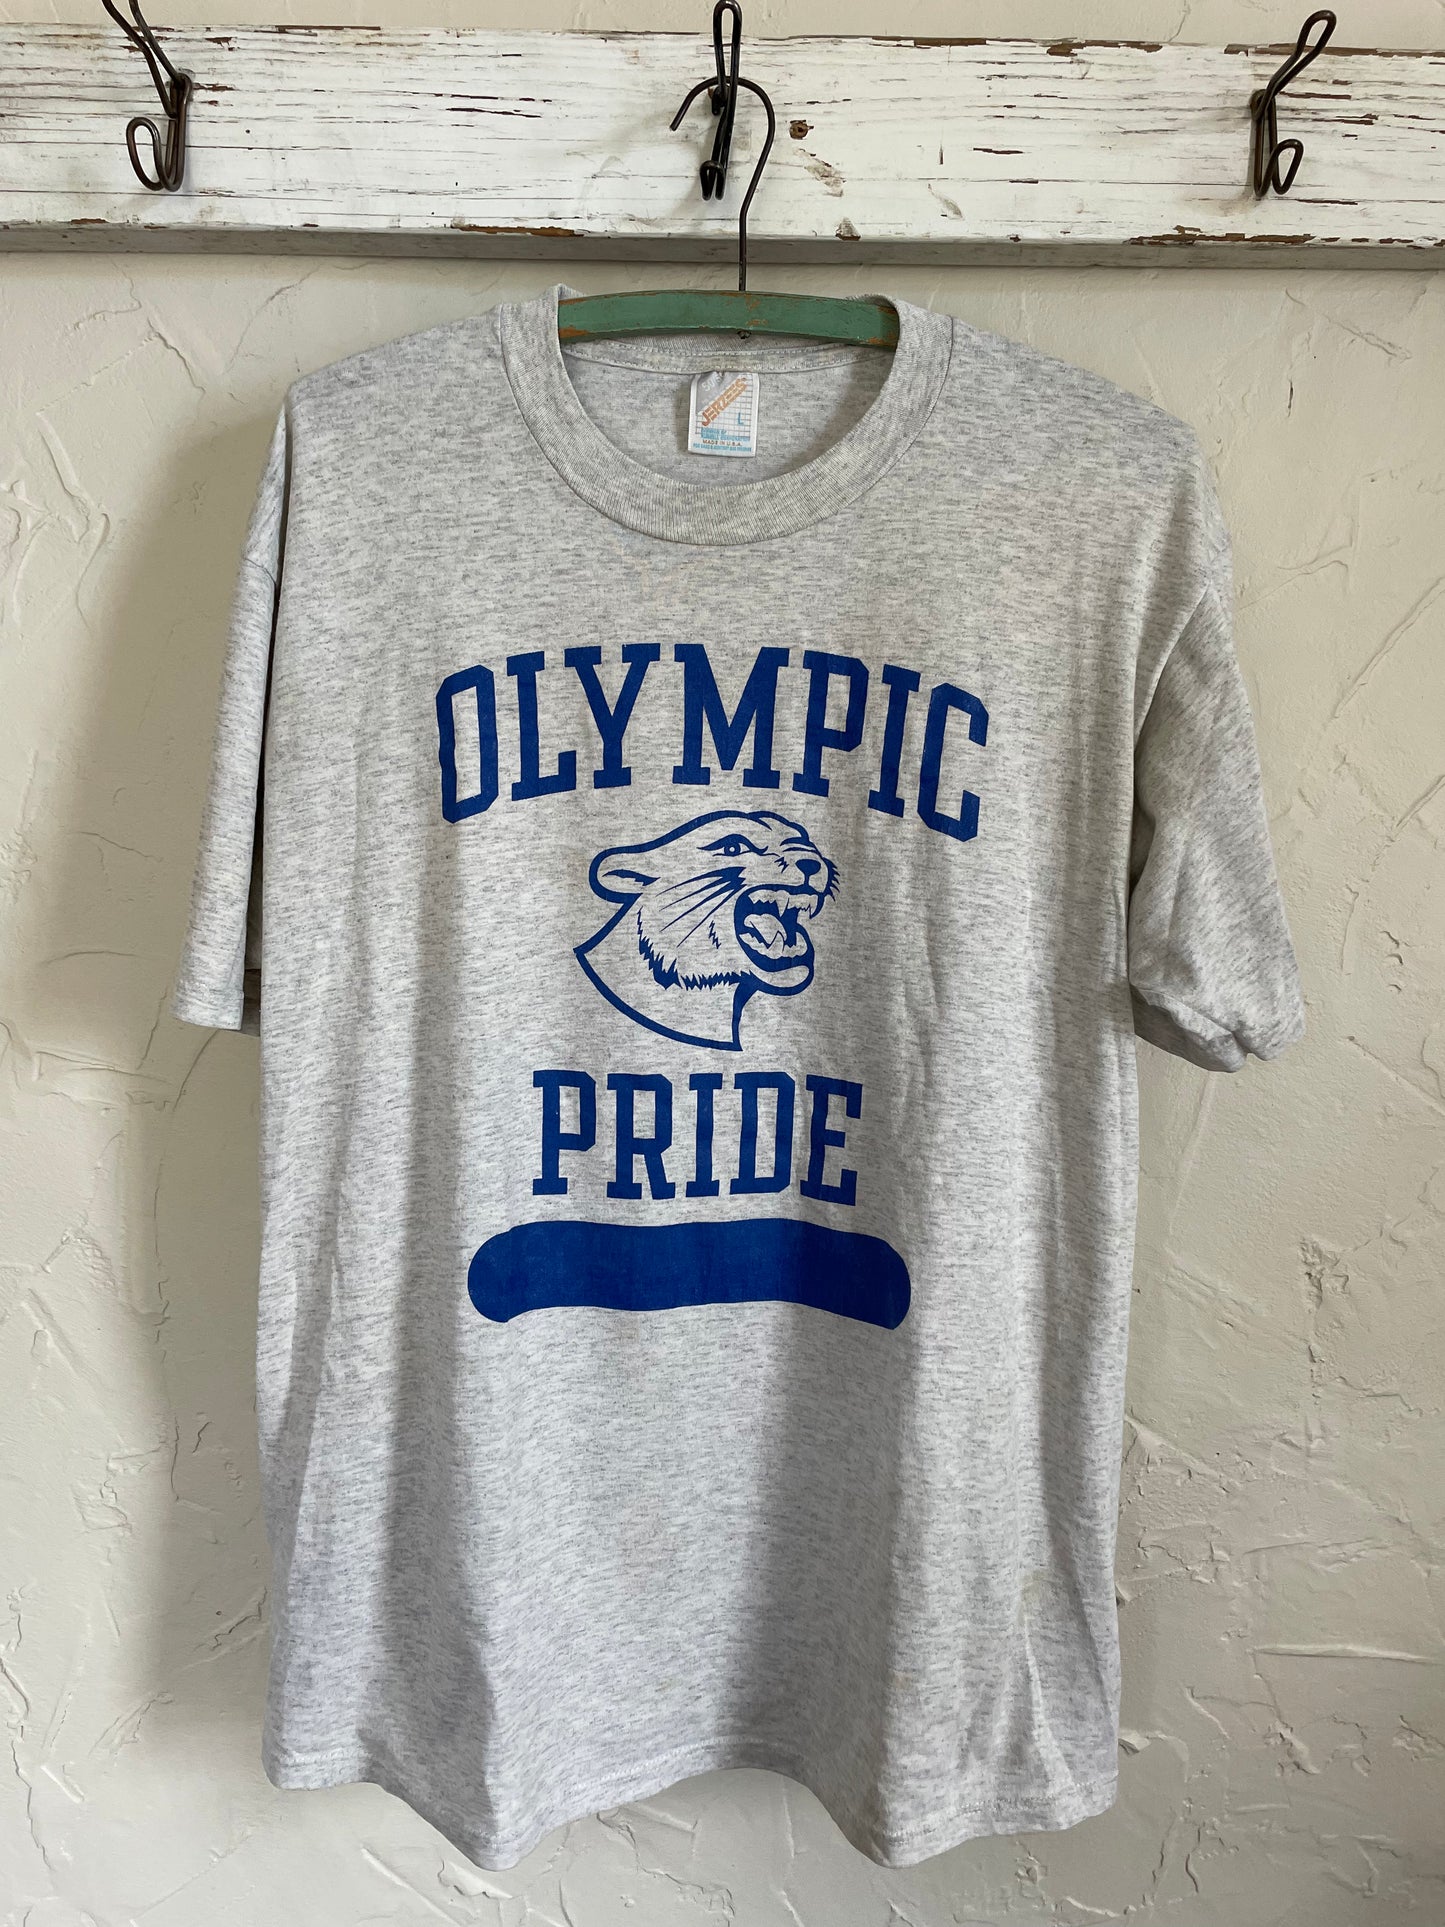 90s Olympic Pride Tee